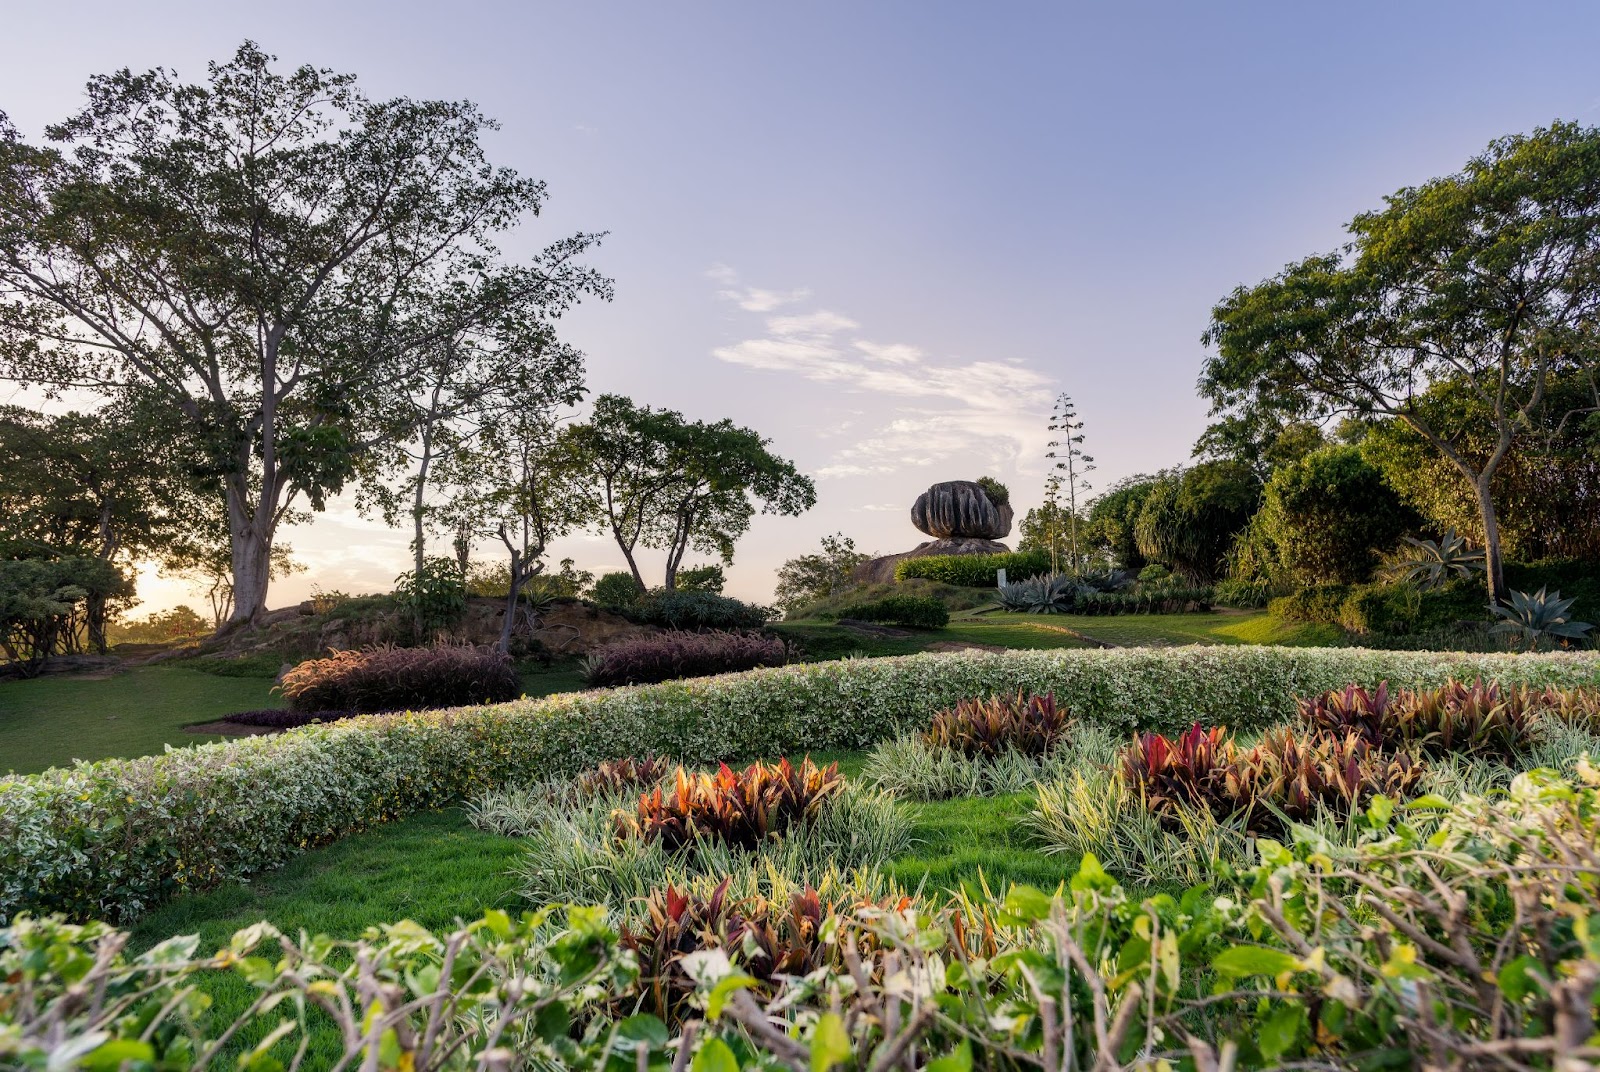 Jardim colorido do Parque da Pedra da Cebola com a pedra se destacando no horizonte, ao lado de árvores com poucas folhas.